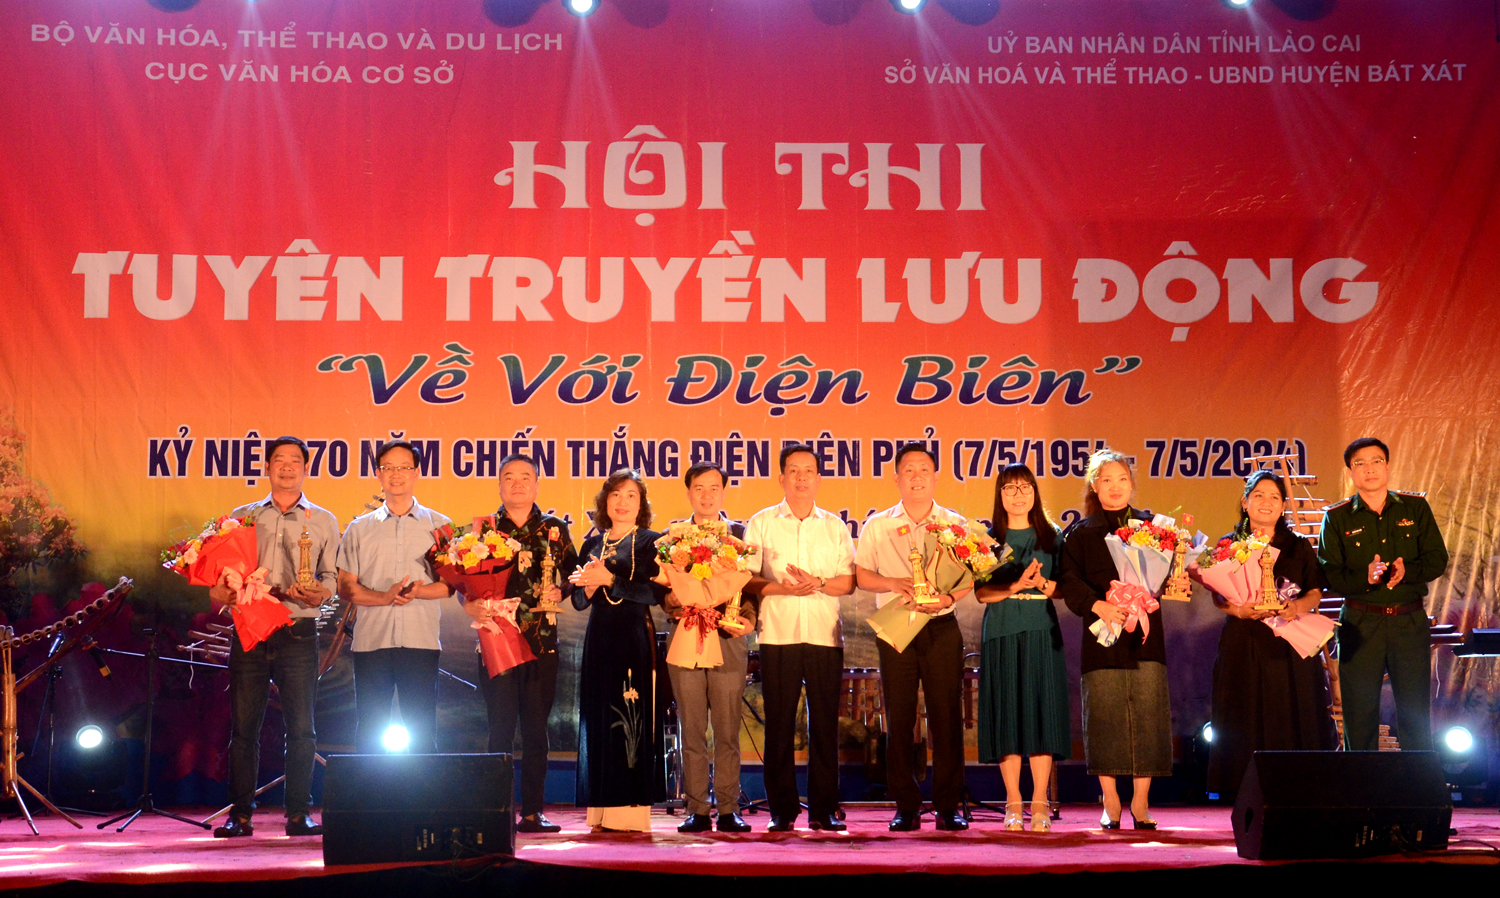 Đại diện Cục Văn hóa cơ sở, Sở Văn hóa Thể thao Lào Cai và huyện Bát Xát tặng hoa các đoàn tham gia lưu diễn.